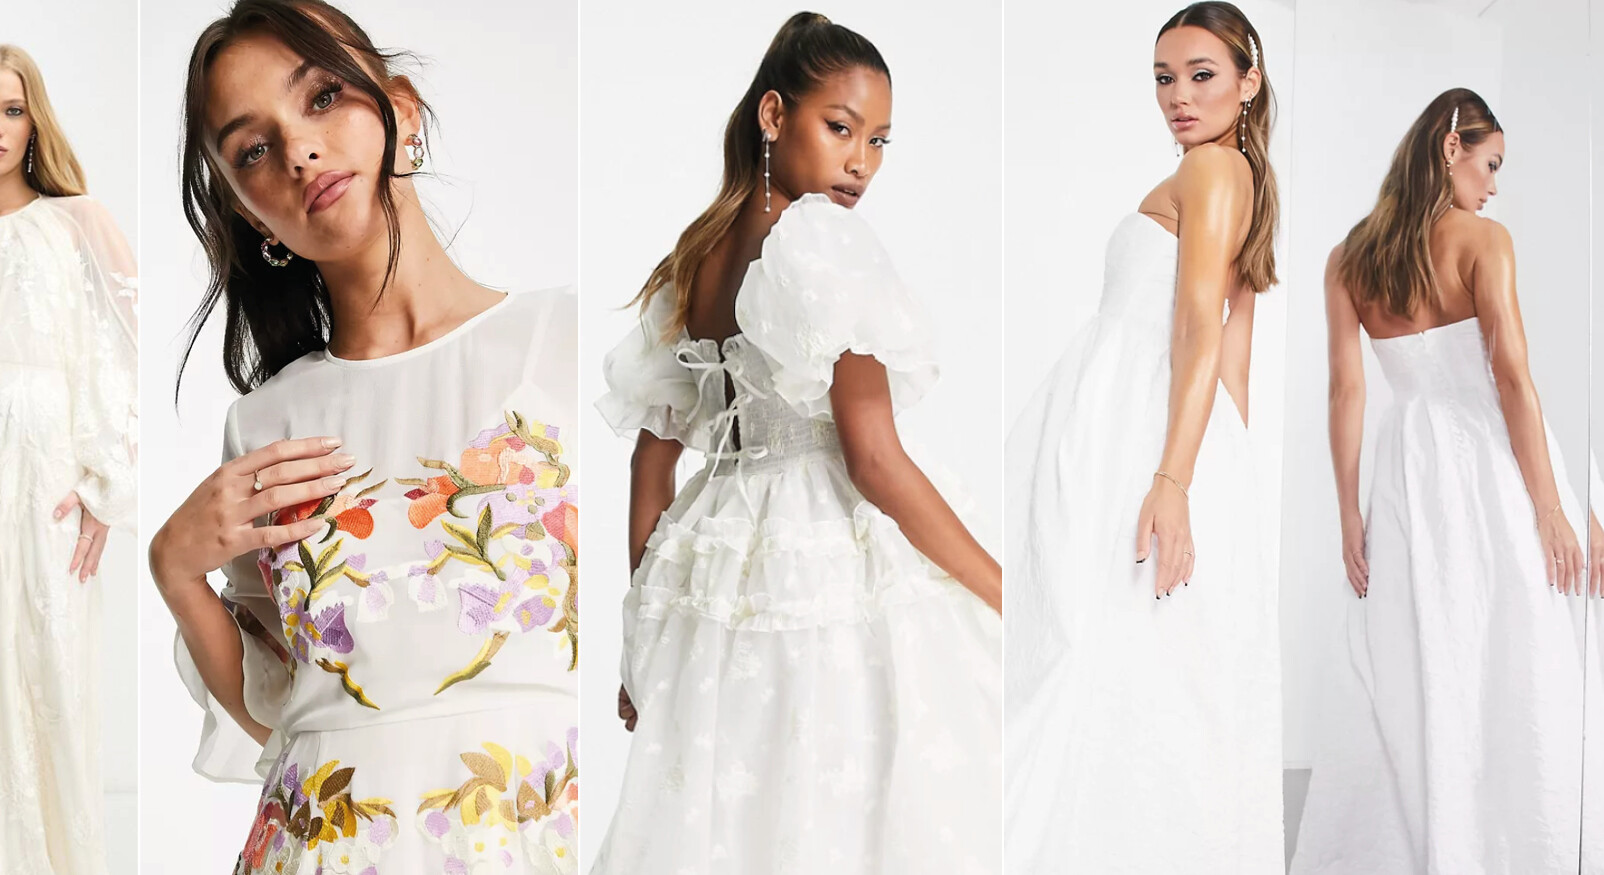 Bruidsjurken Asos design trends wit lang modellen vrouwen